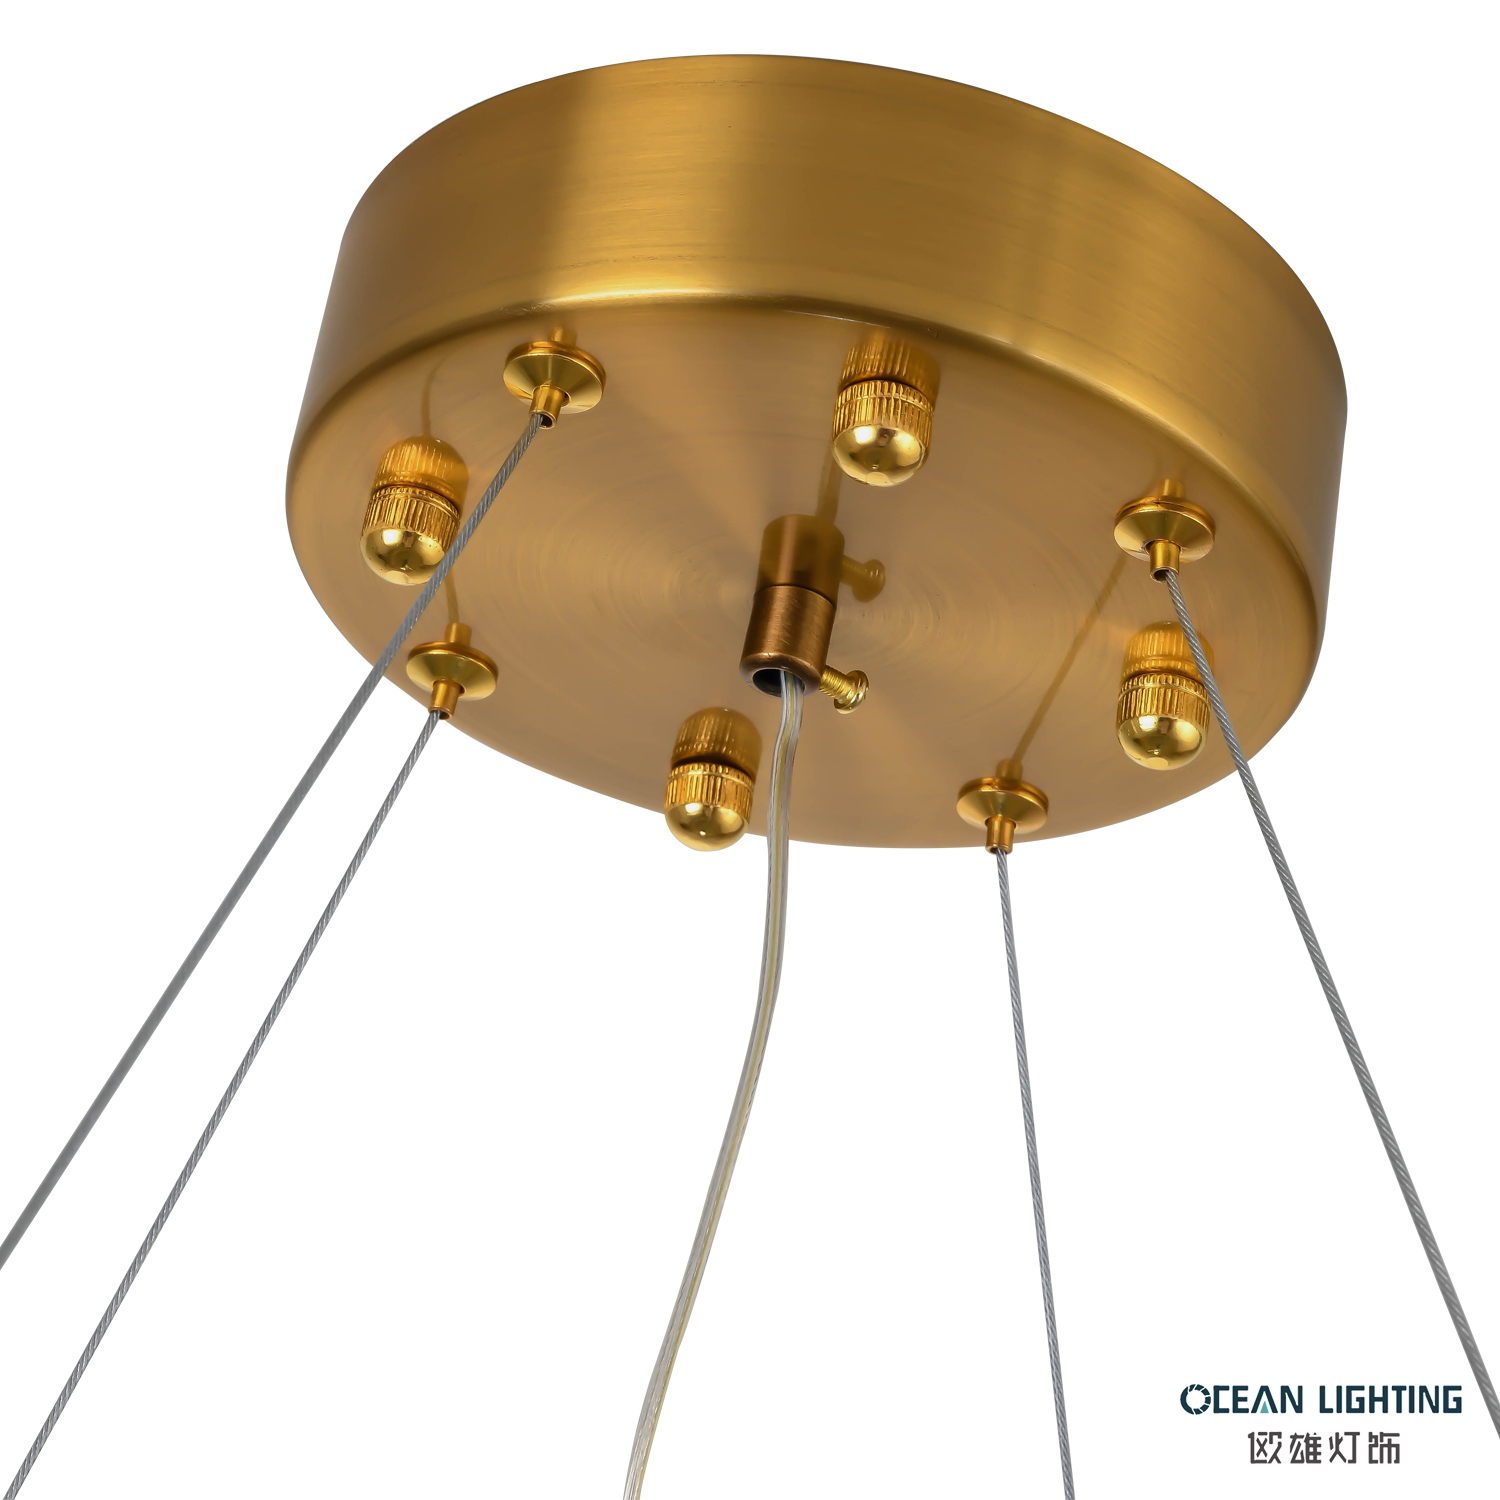 OCEAN LMAP Nordic Gold Led Kitchen Pendant Light Modern for Kitchen